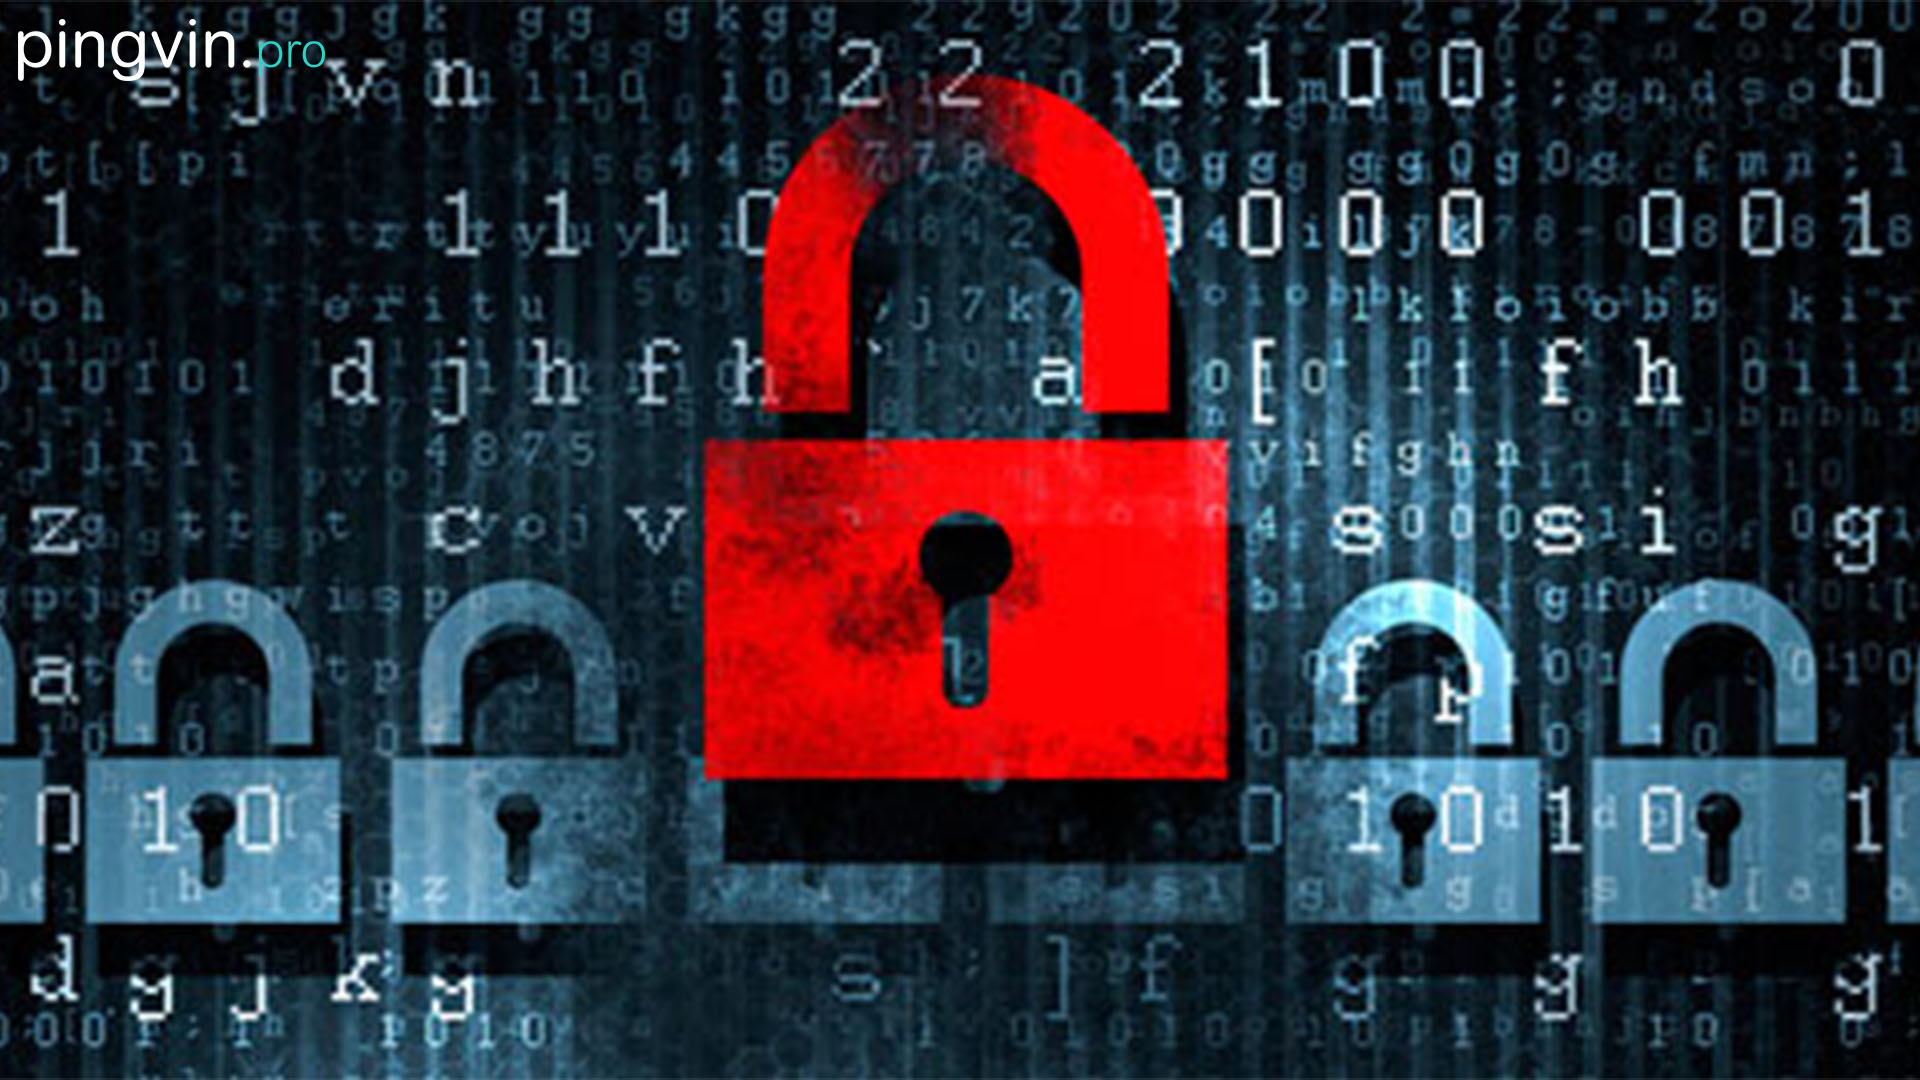 Дія / організаційно-технічну модель кіберзахисту / Хакер / сайт Конституційного суду / Розширення / двофакторну автентифікацію / Український хакер / персональні дані